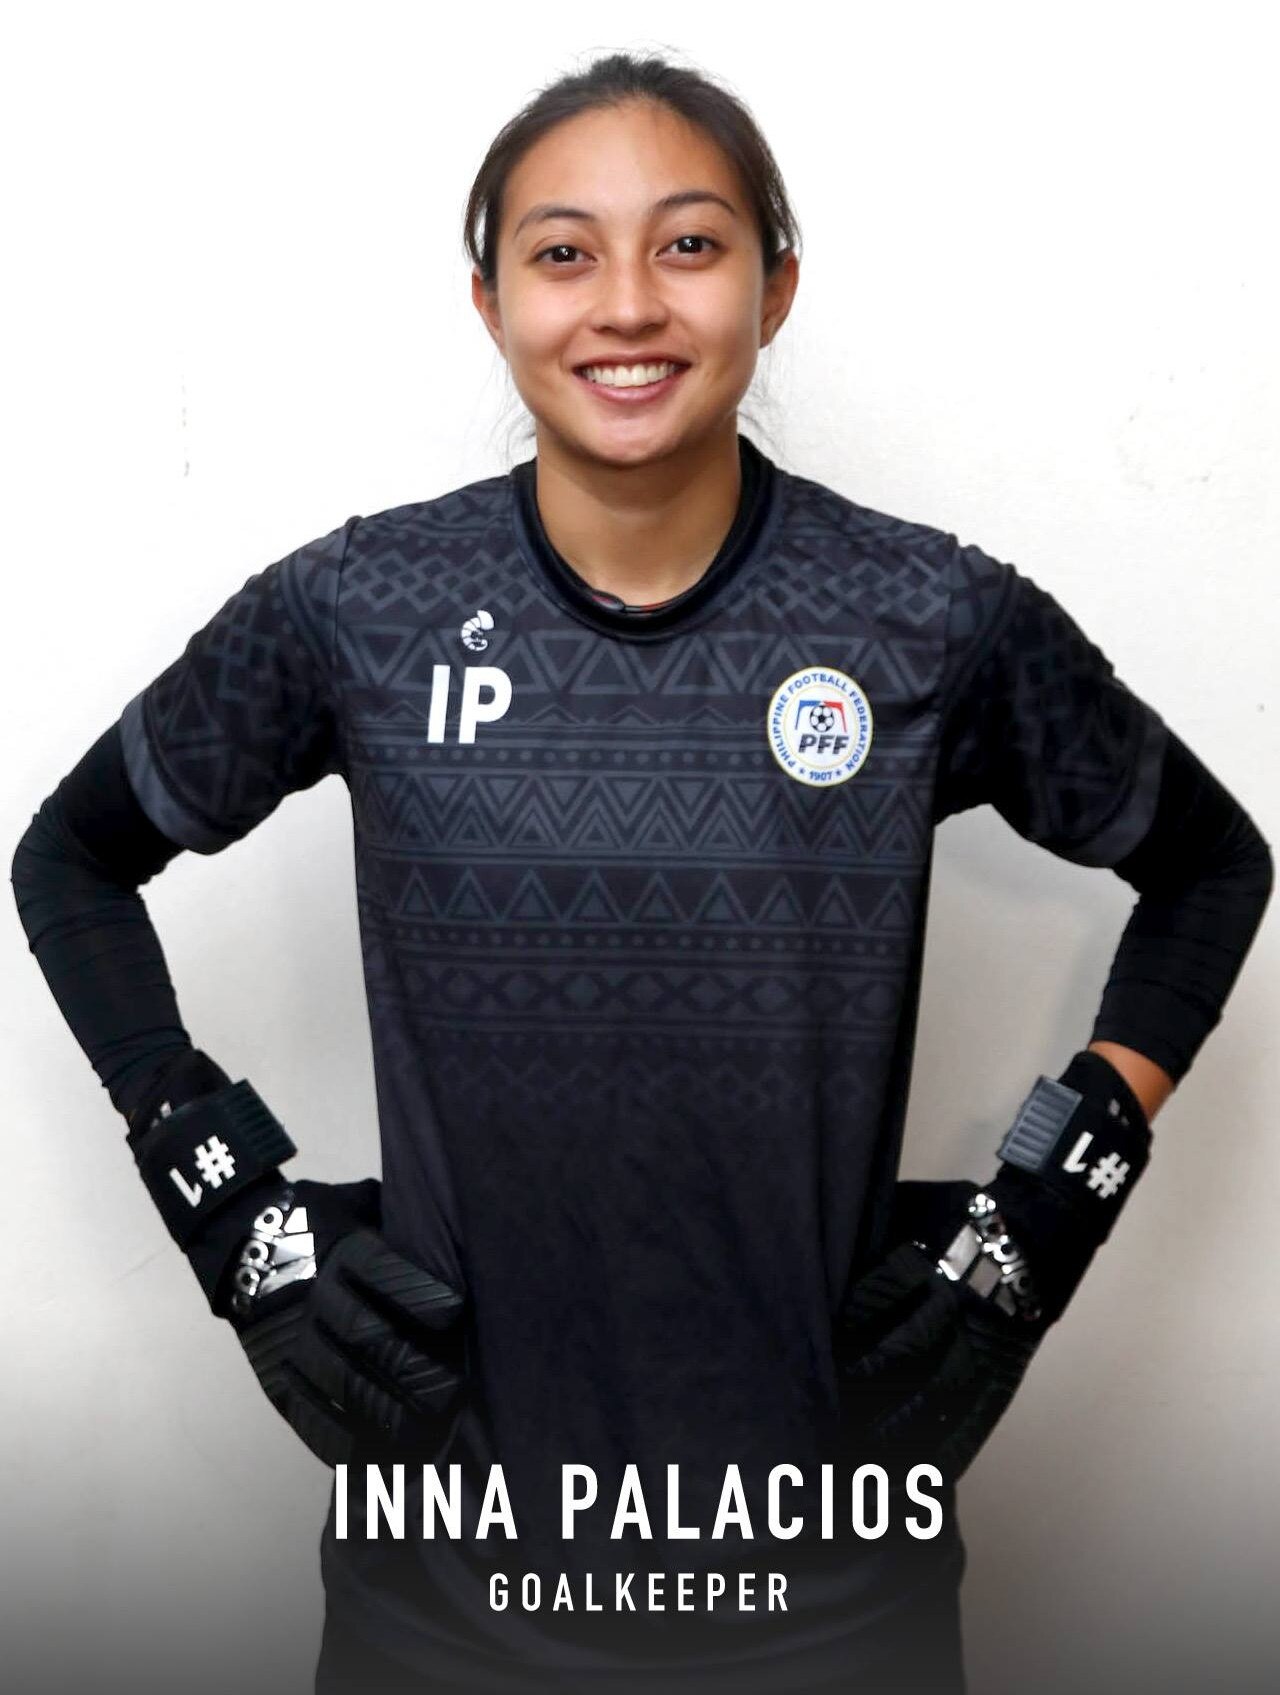 Goalkeeper Inna Palacios